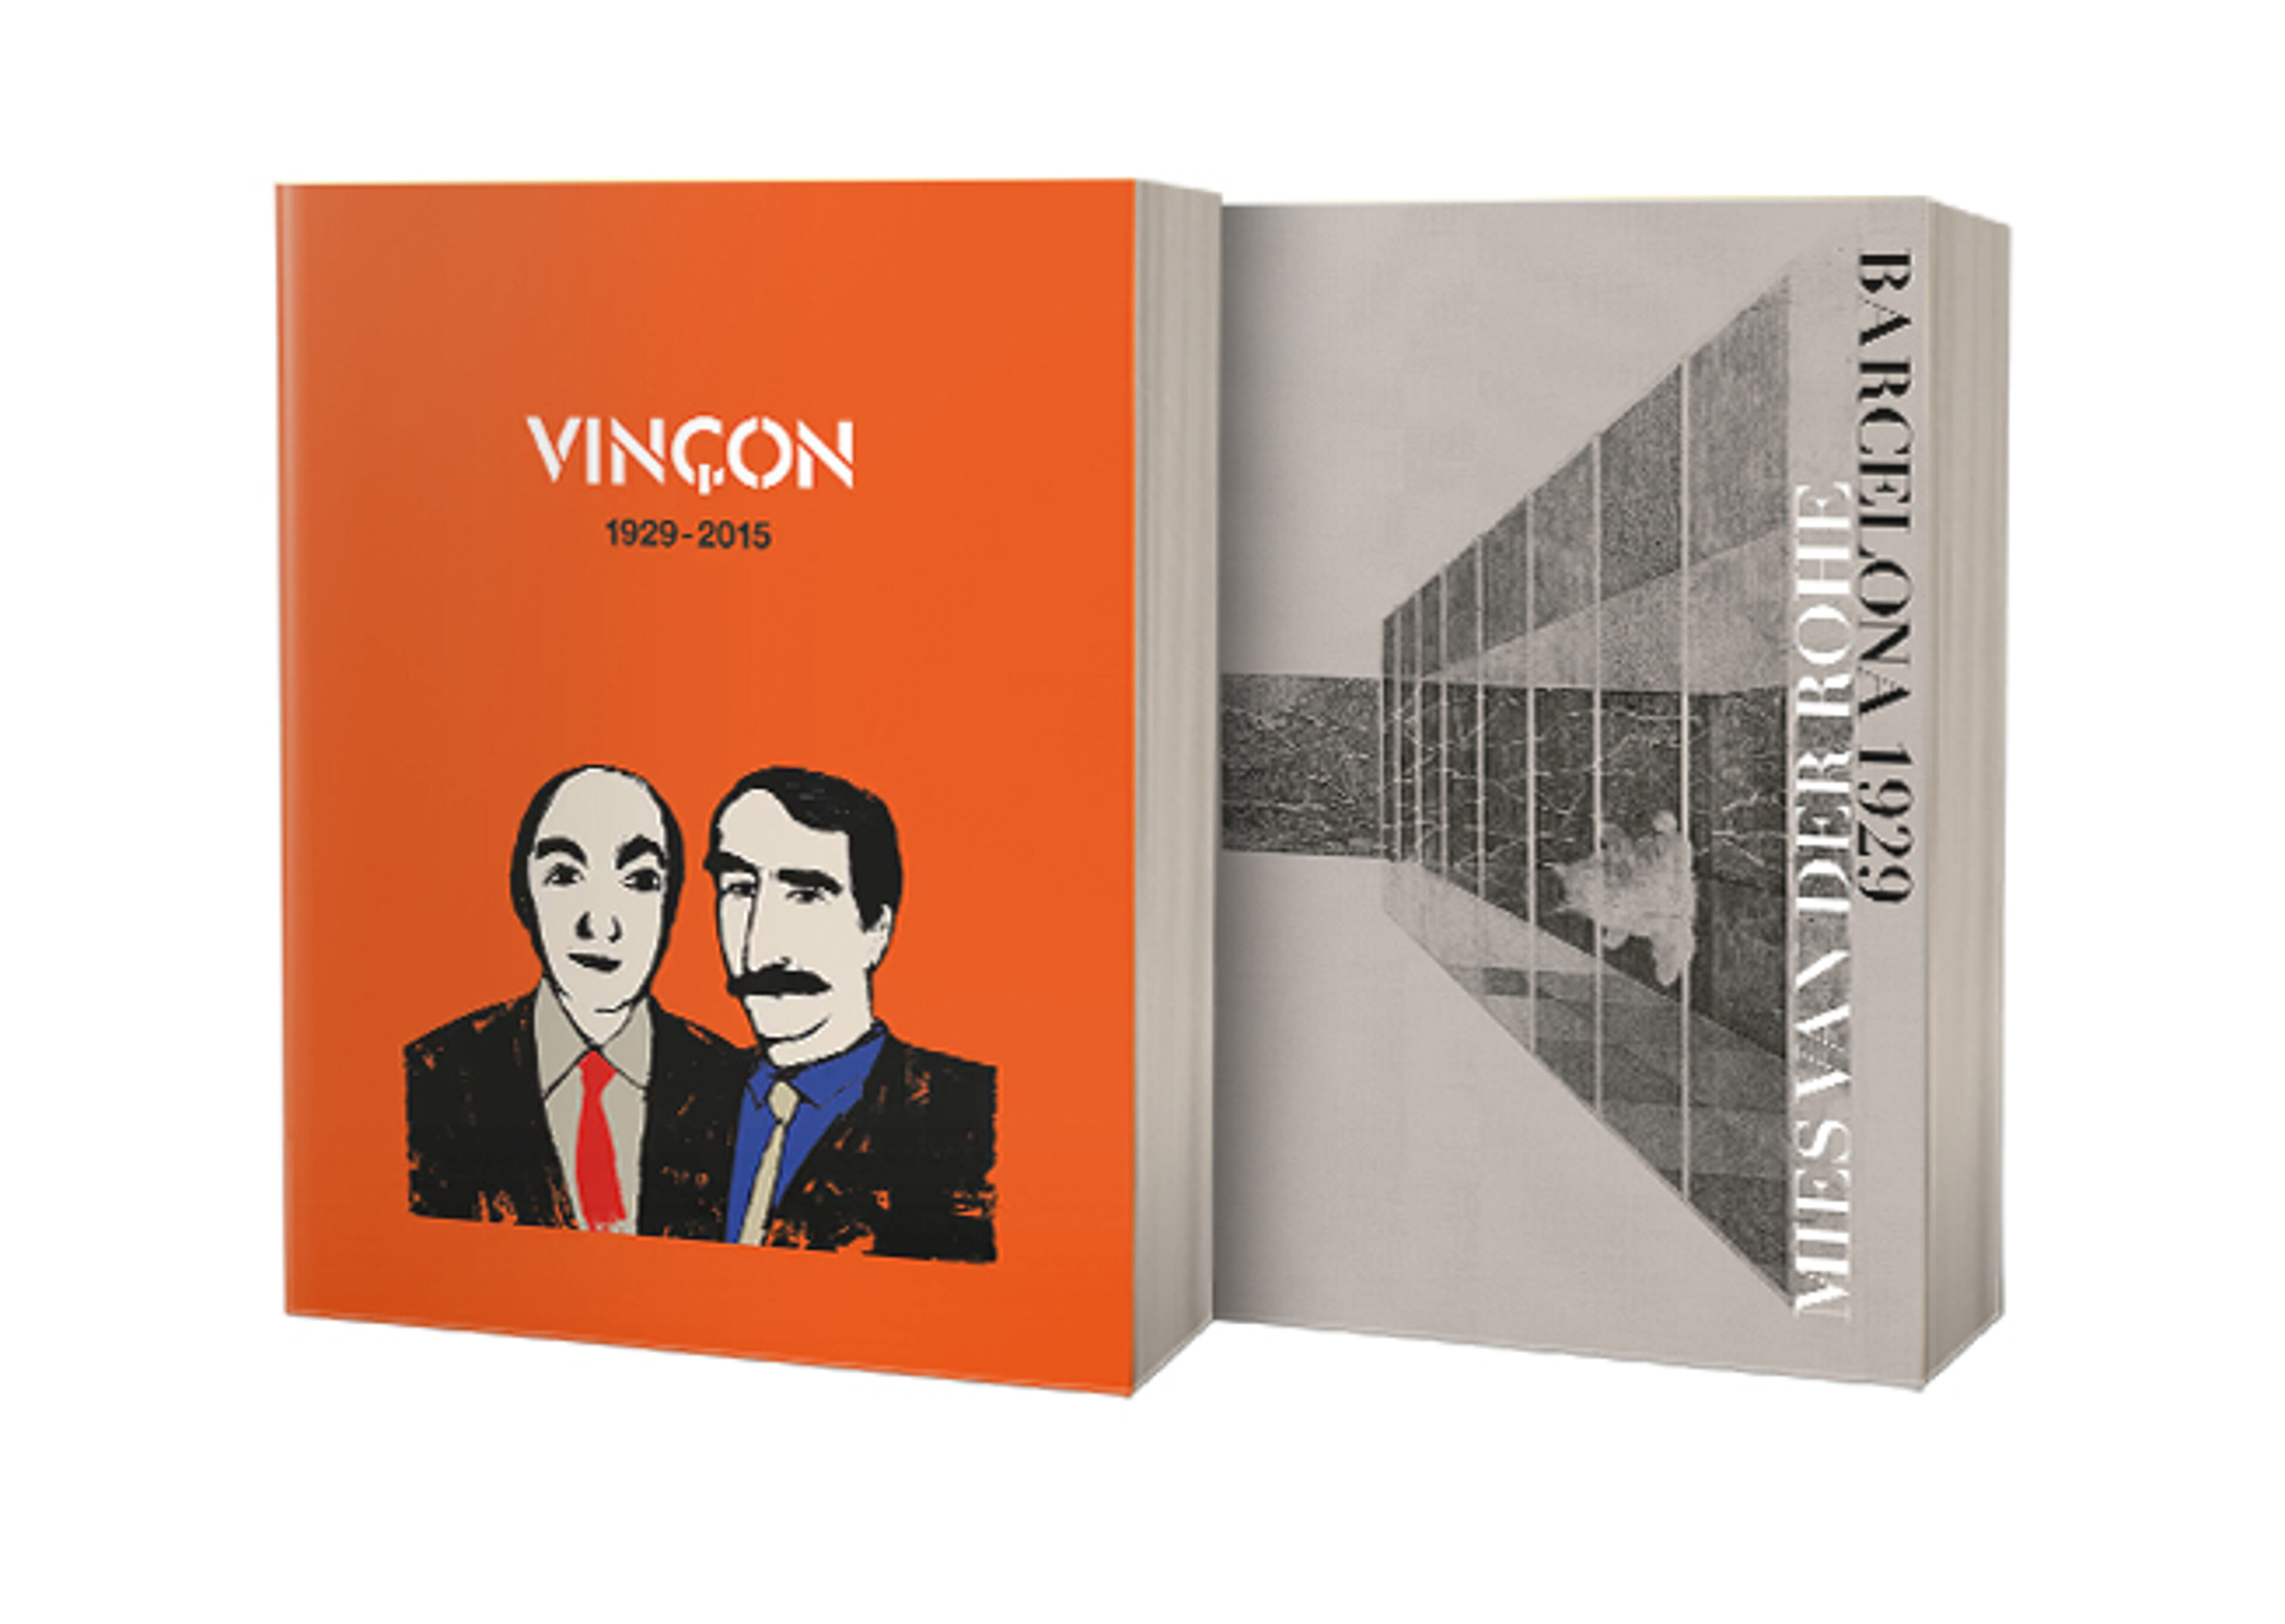 Un llibre amb coberta taronja que mostra una il·lustració estilitzada de dos homes, amb el títol 'VINÇON 1929-2015' a sobre.